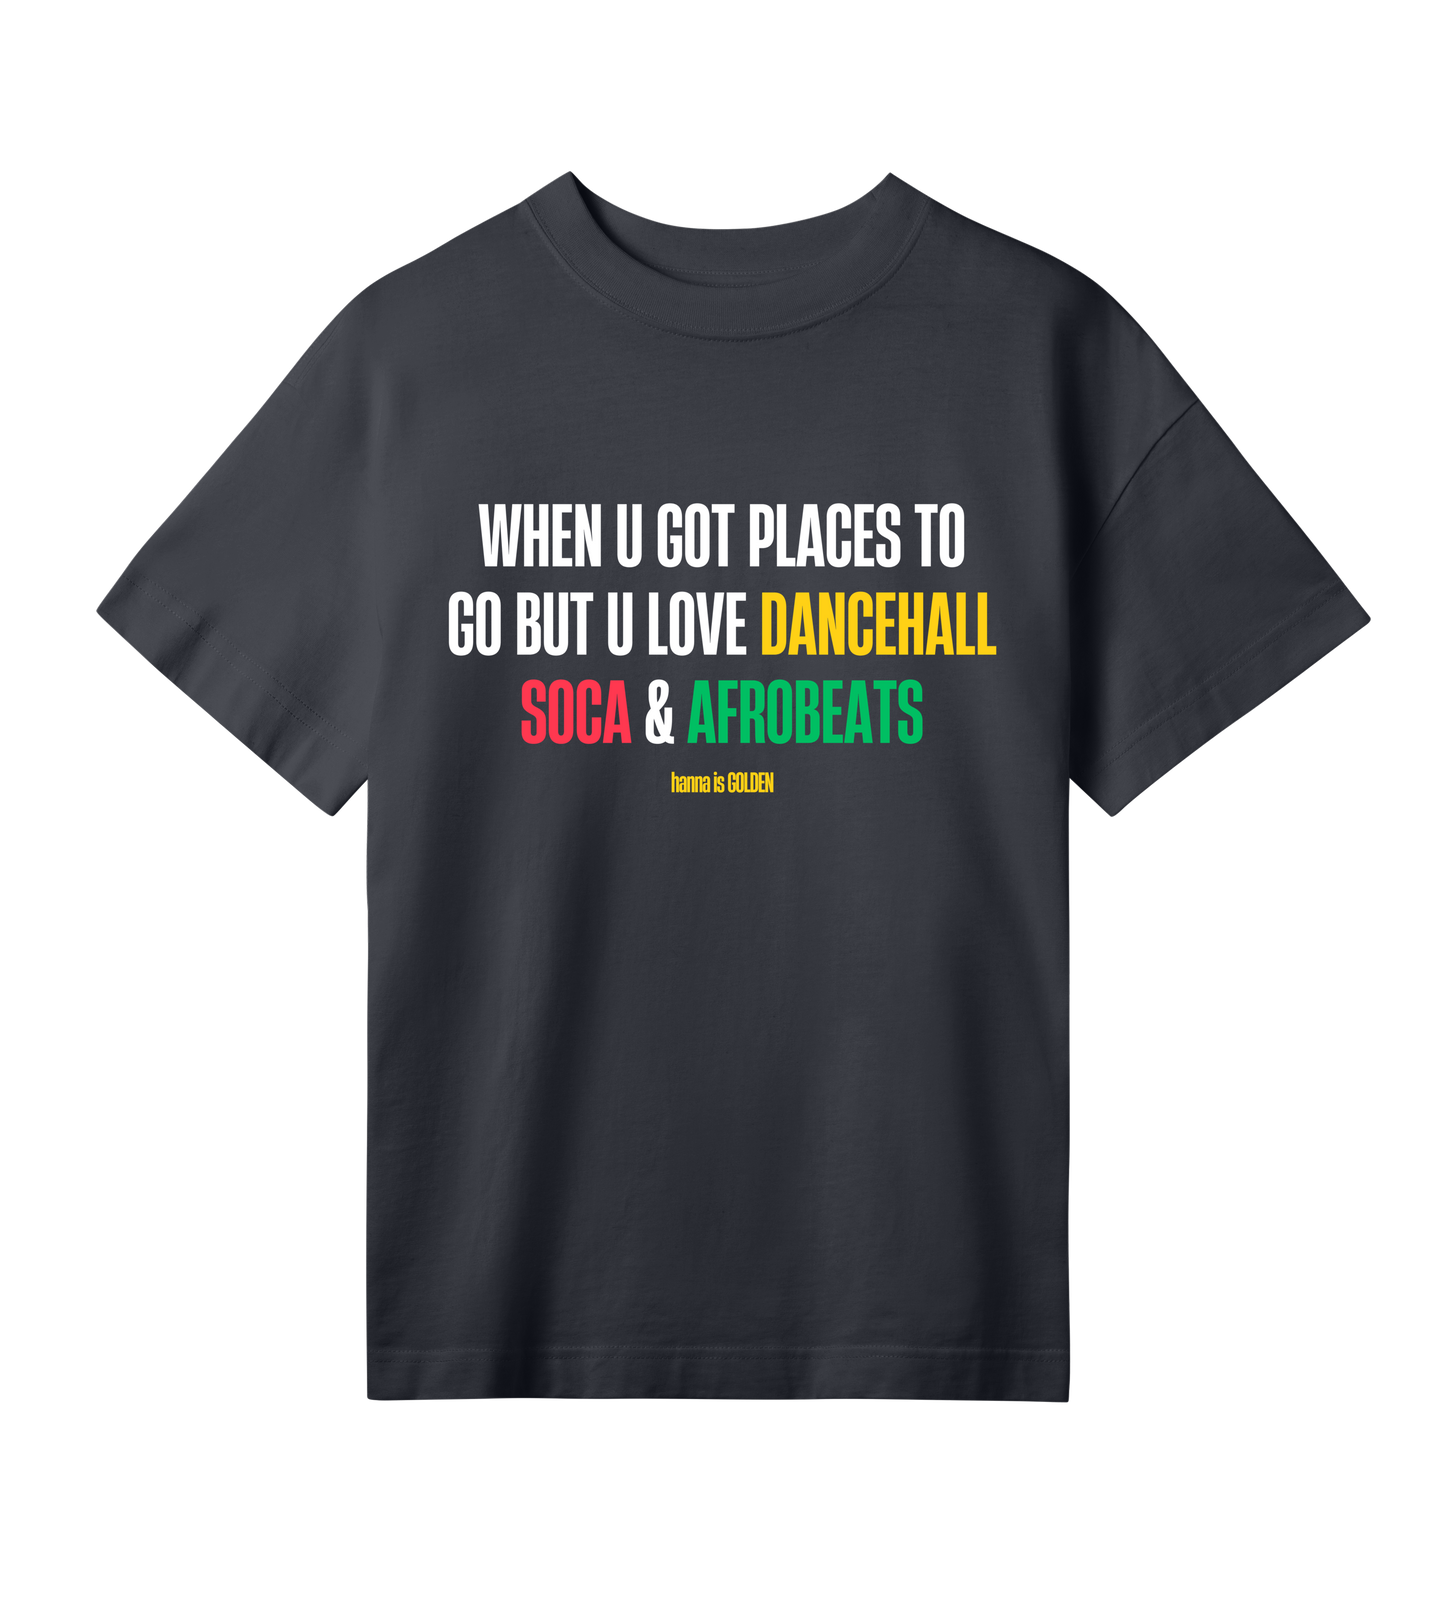 Love dancehall, soca & afrobeats t-shirt